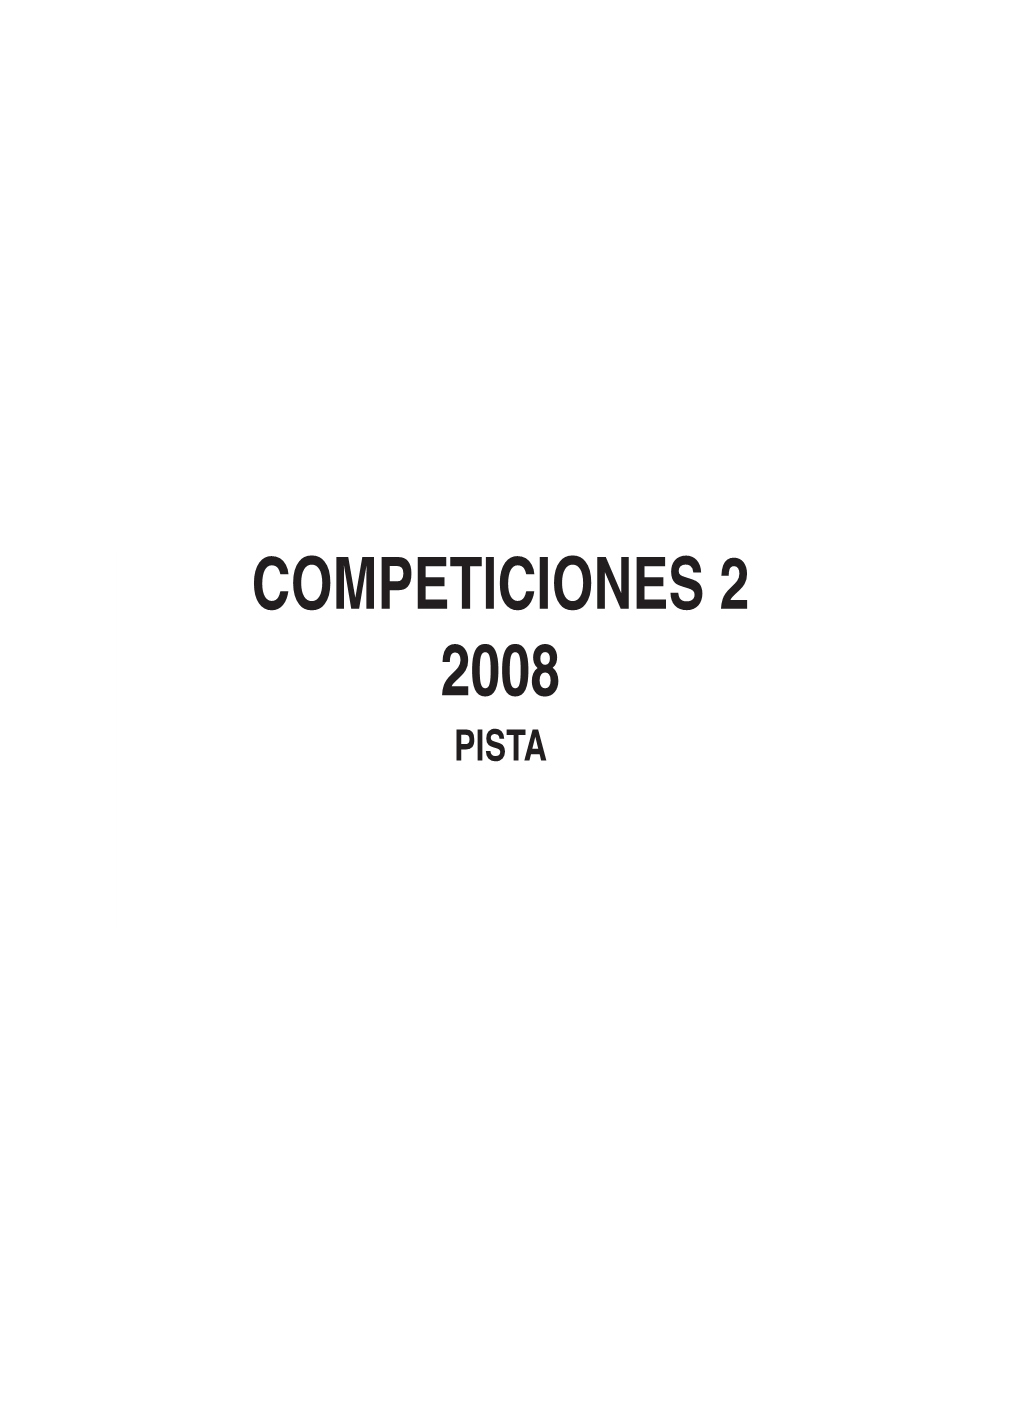 (2008) Reglamentación